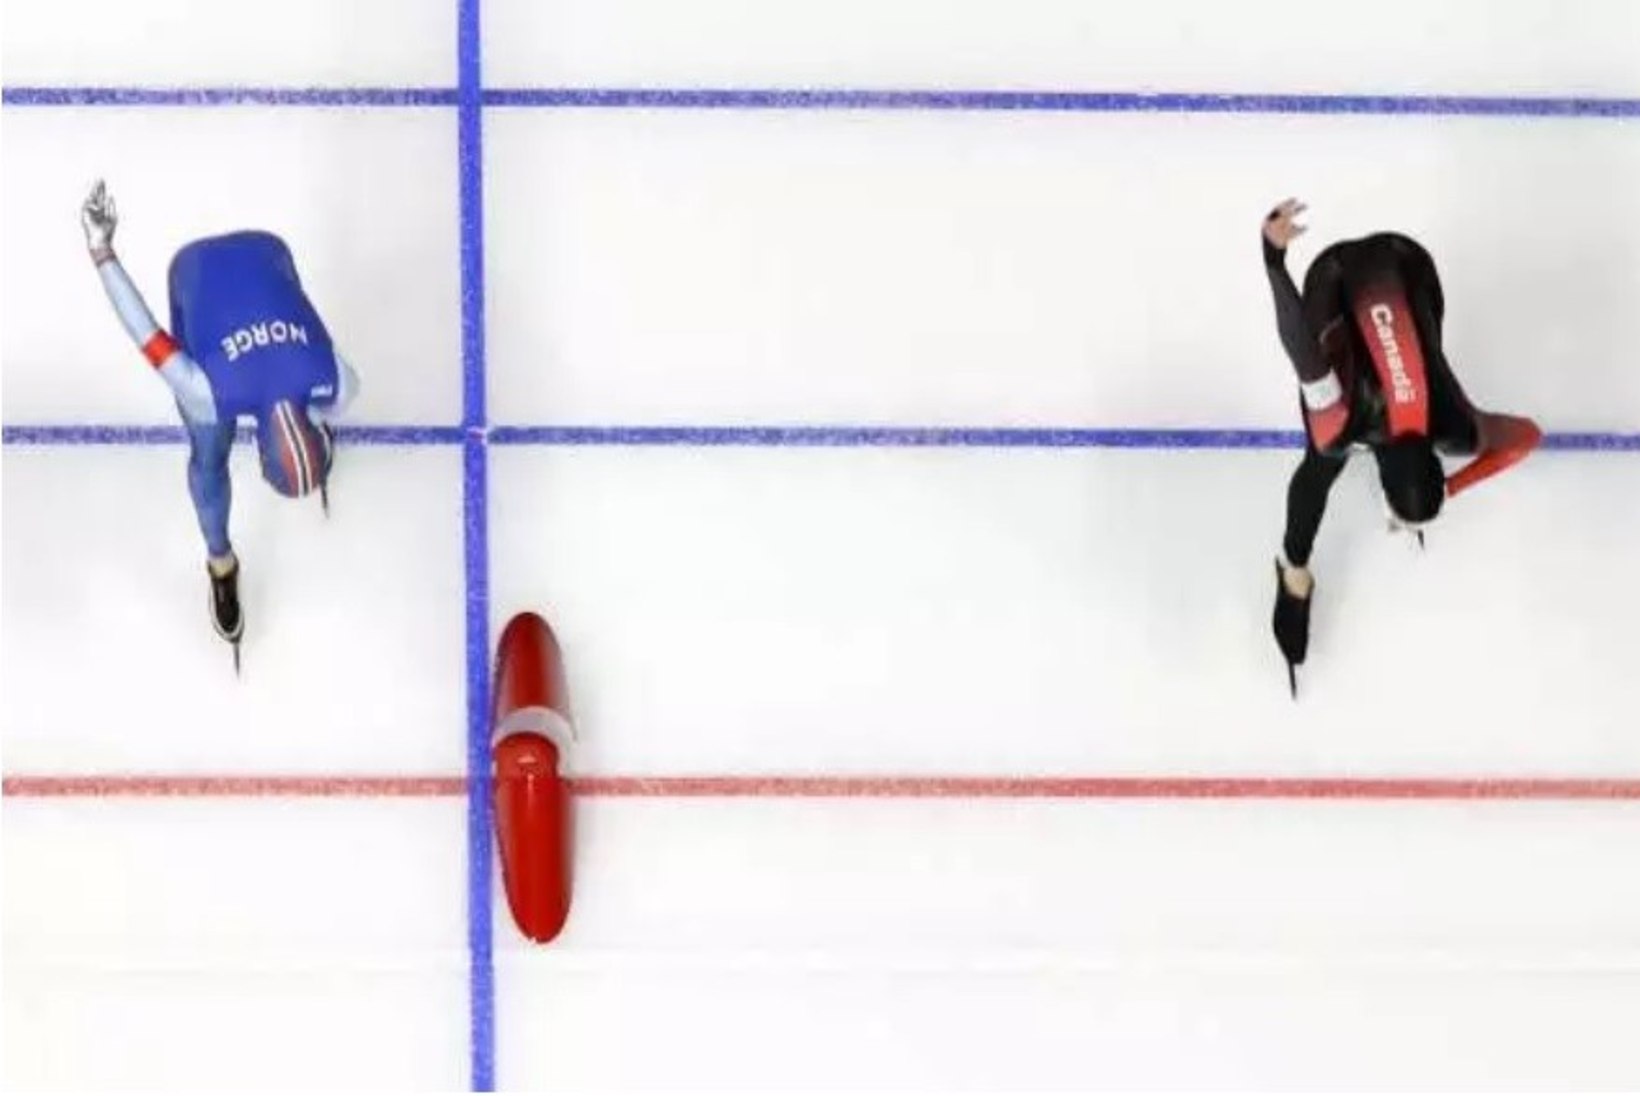 FOTO | Kiiruisutamise olümpiamedal jagati paari millimeetri sees, hollandlane tegi vägevat ajalugu